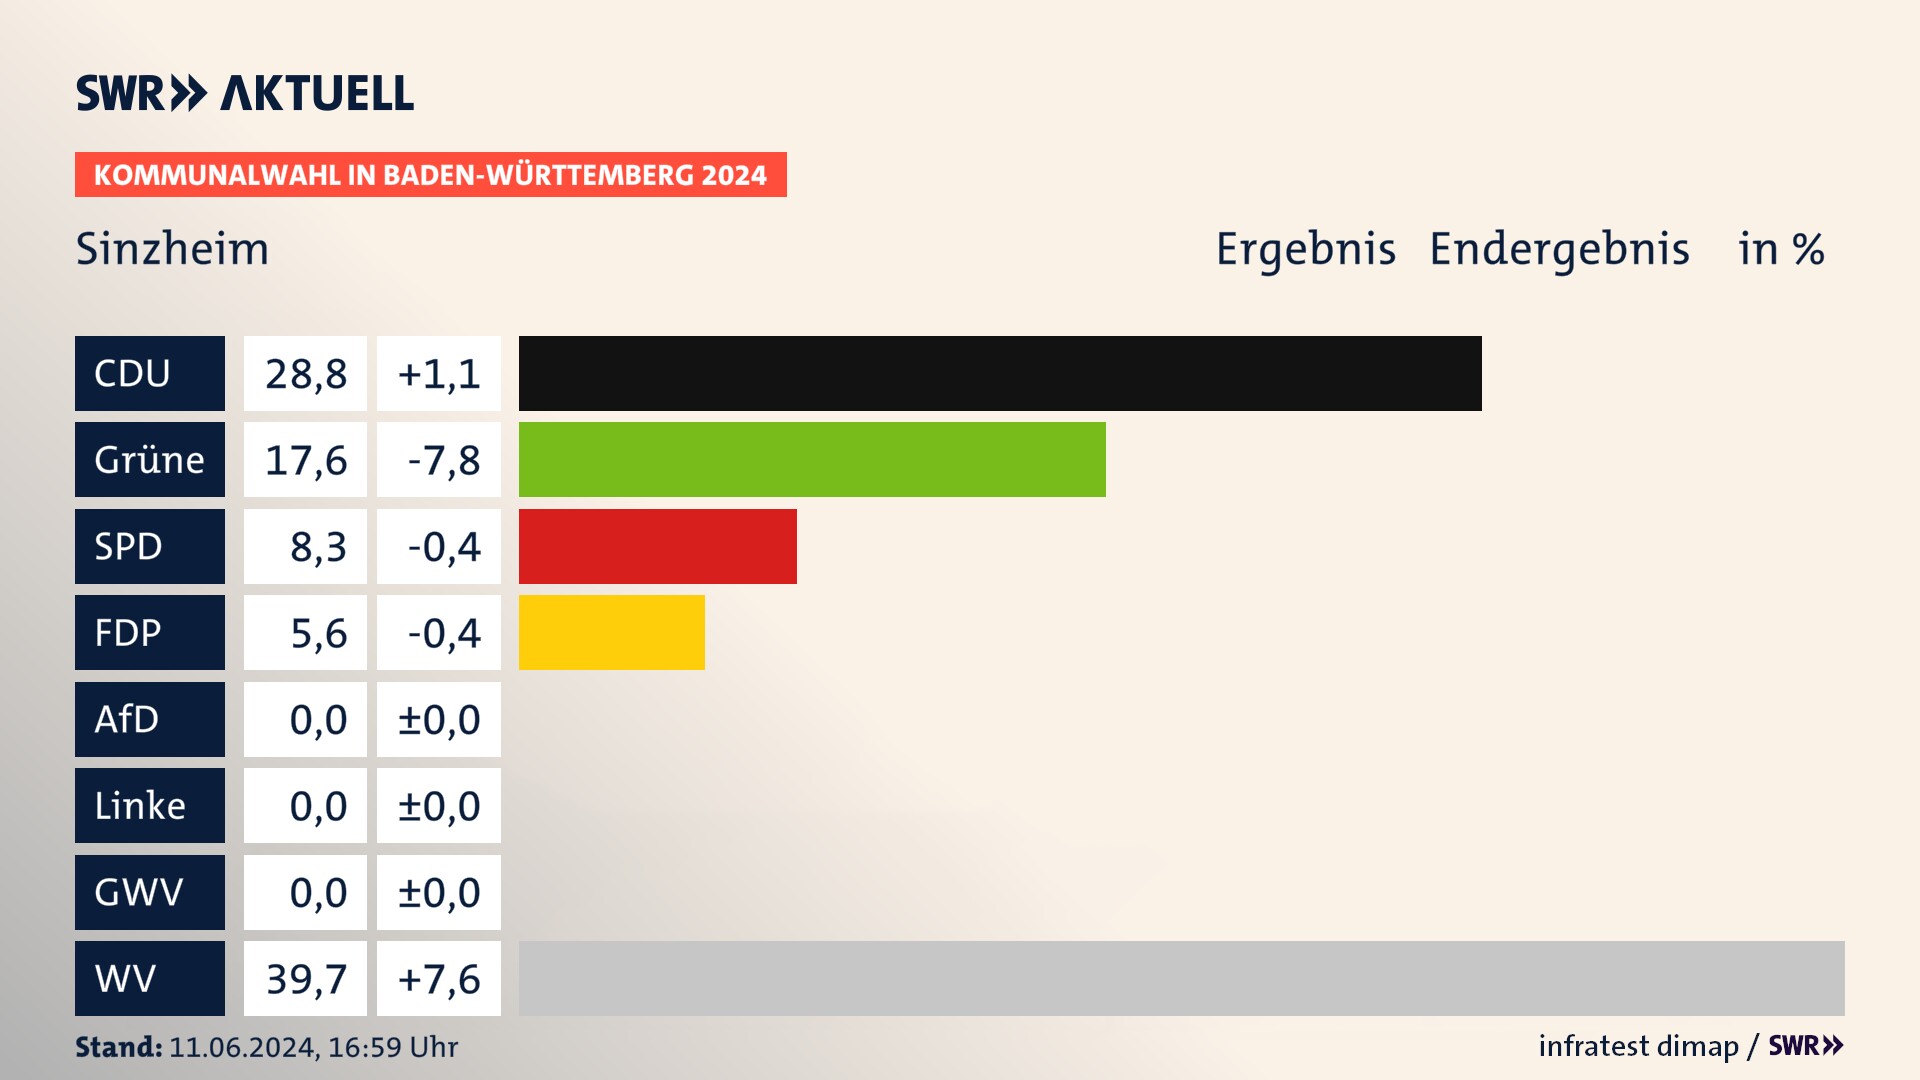 Kommunalwahl 2024 Endergebnis Zweitstimme für Sinzheim. In Sinzheim erzielt die CDU 28,8 Prozent der gültigen  Stimmen. Die Grünen landen bei 17,6 Prozent. Die SPD erreicht 8,3 Prozent. Die FDP kommt auf 5,6 Prozent. Die Wählervereinigungen landen bei 39,7 Prozent.